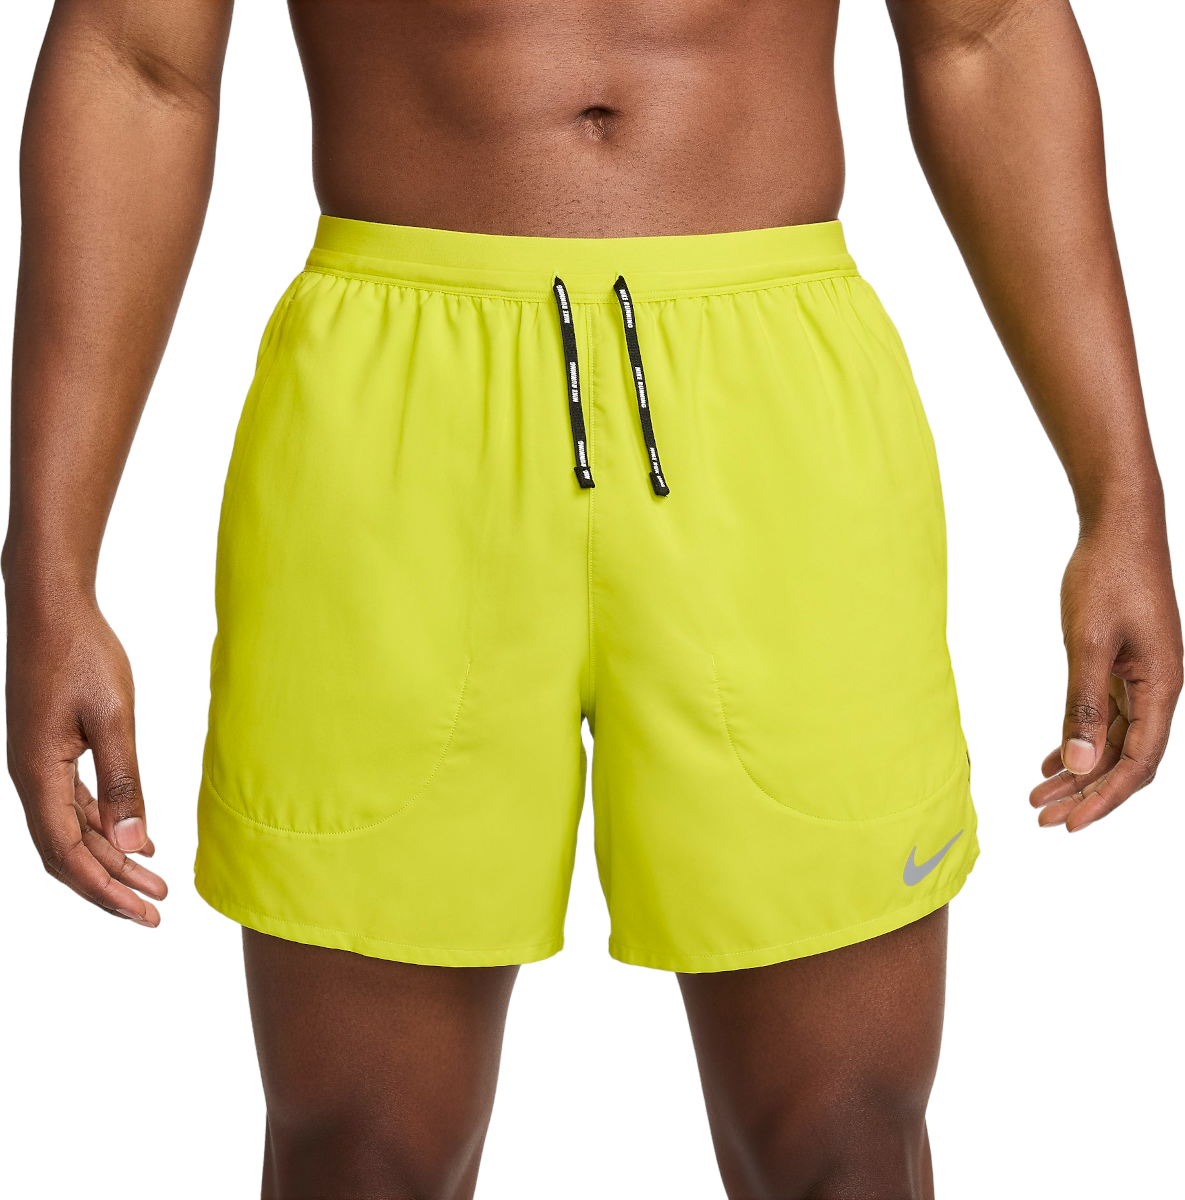 Shorts Nike Flex Stride 5inch